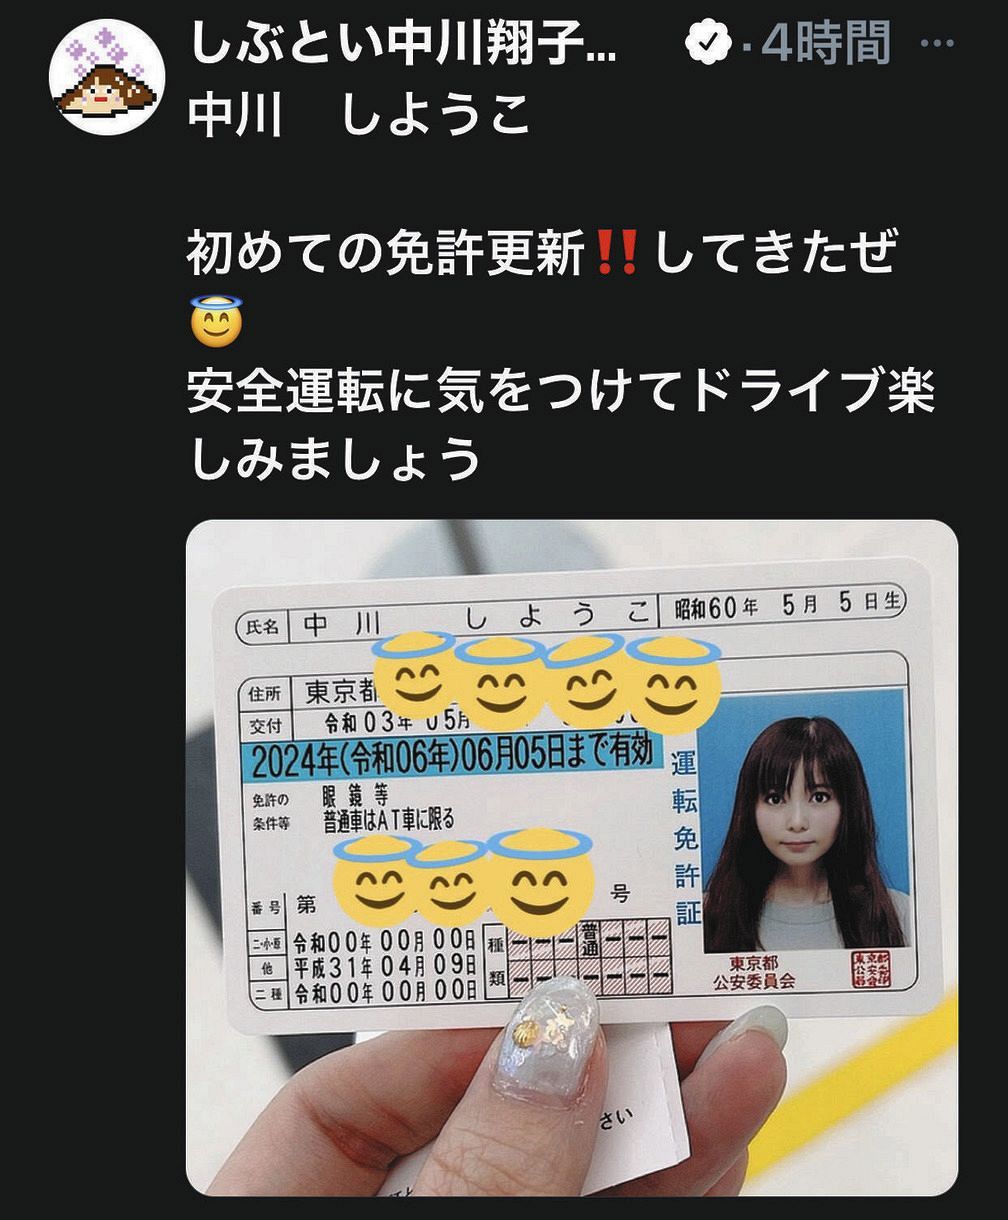 中川翔子がツイッターで公開した初更新の運転免許証